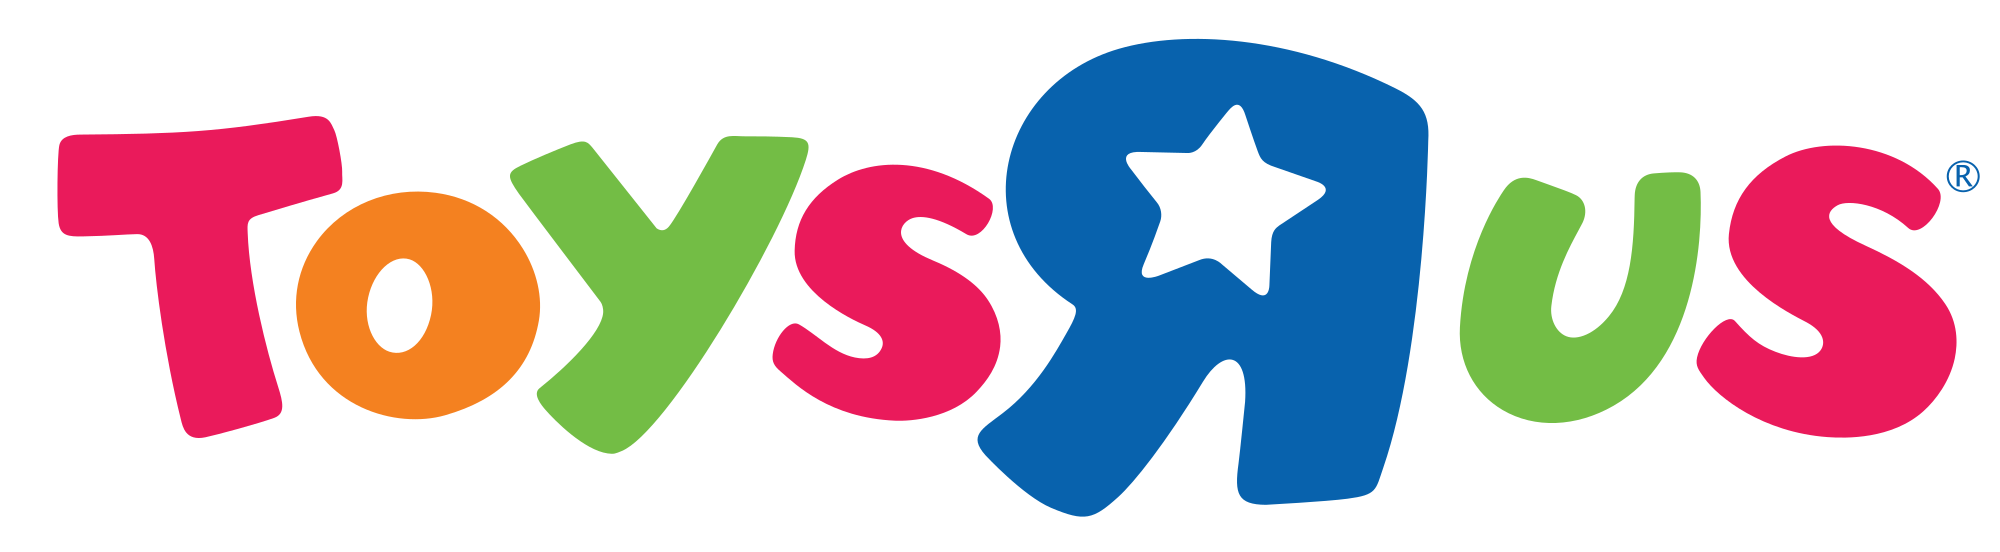 Toys_-R-_Us_logo.svg.png